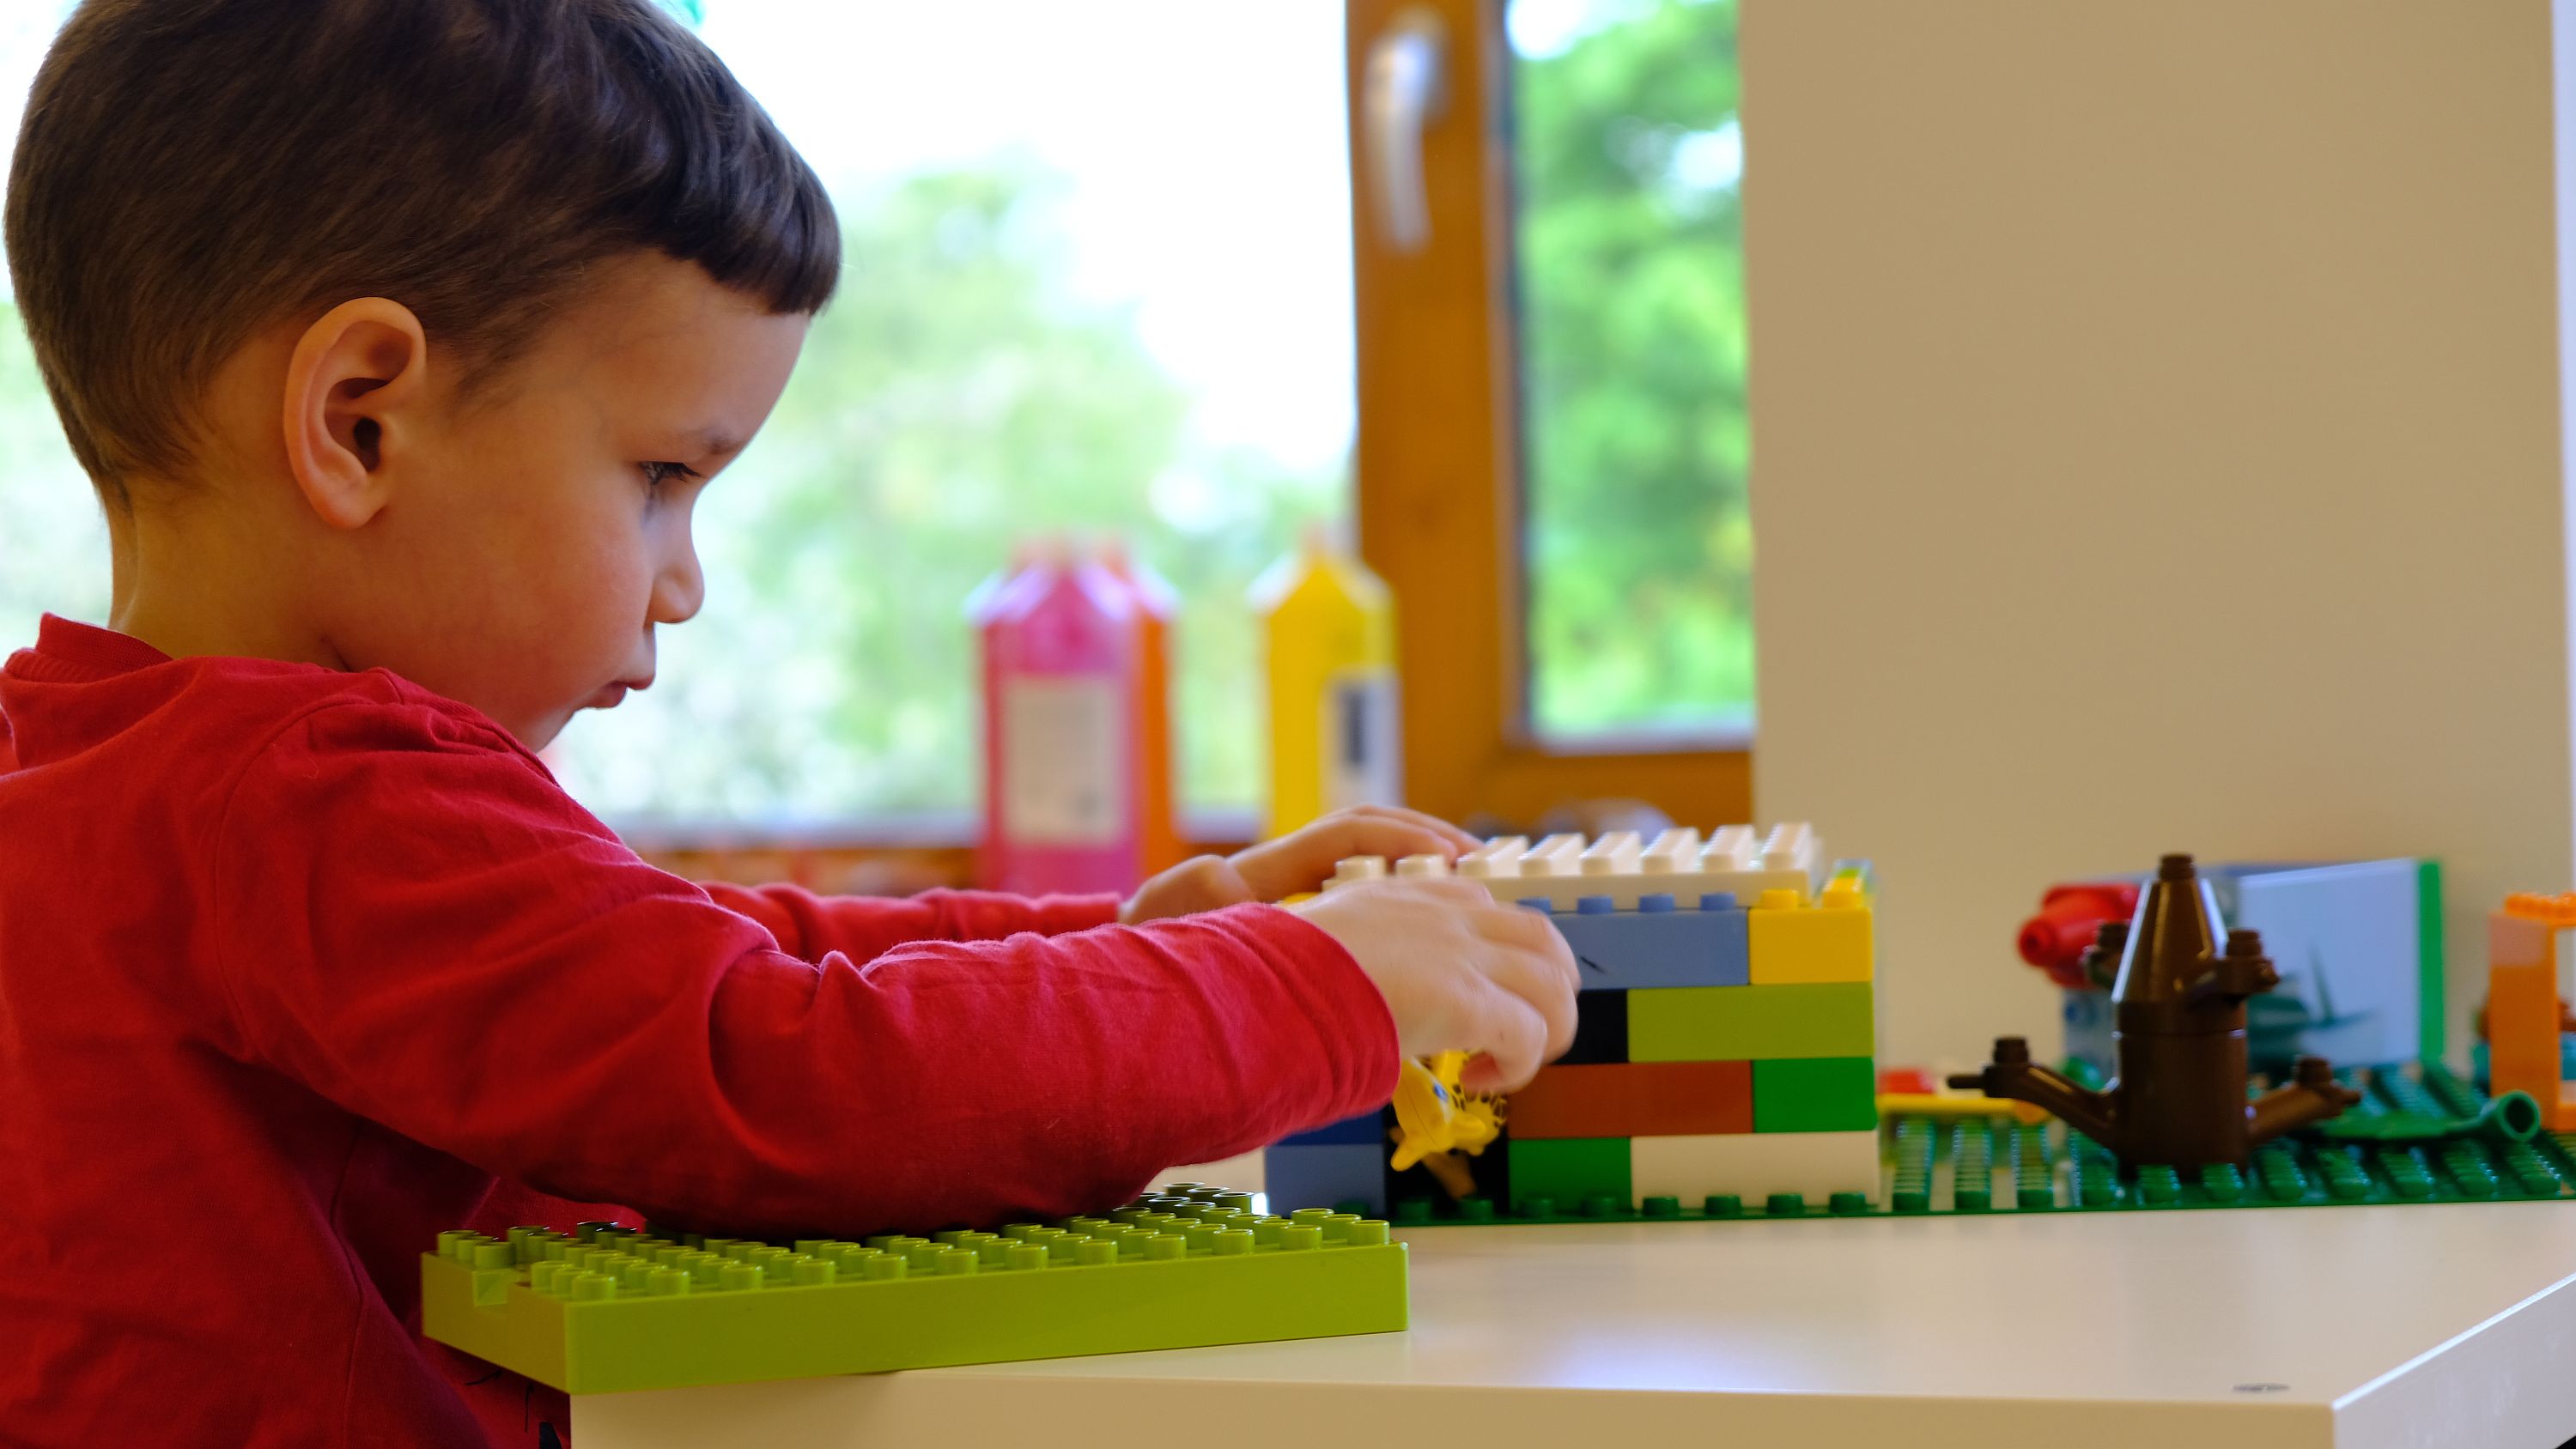 Foto: Ein Junge baut mit Lego-Steinen